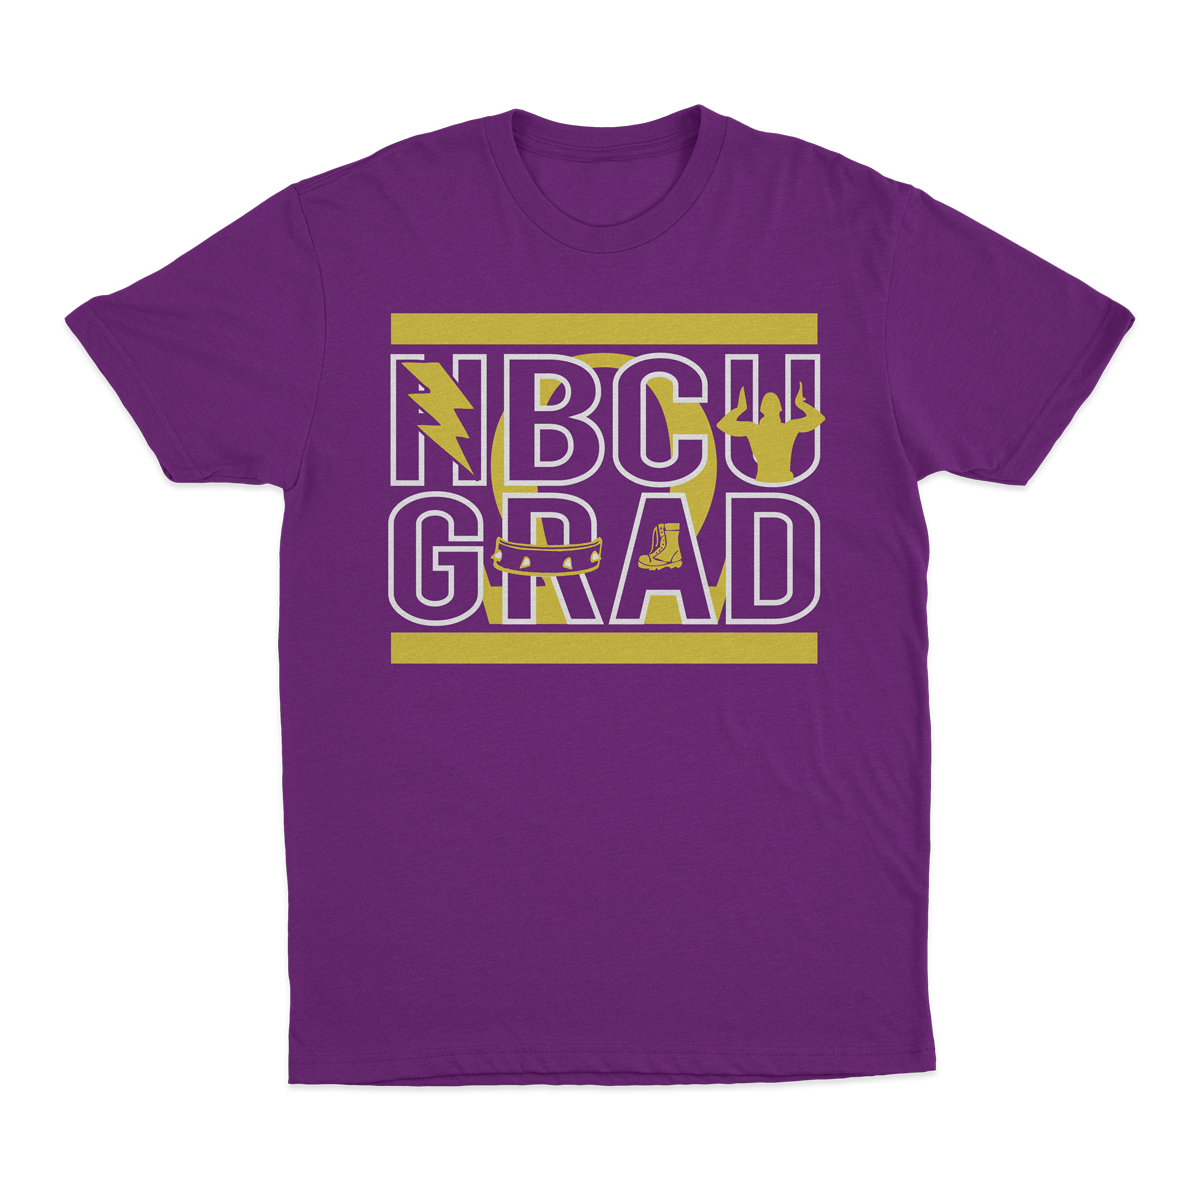 HBCU GRAD | Que Edition | Tshirt - Purple